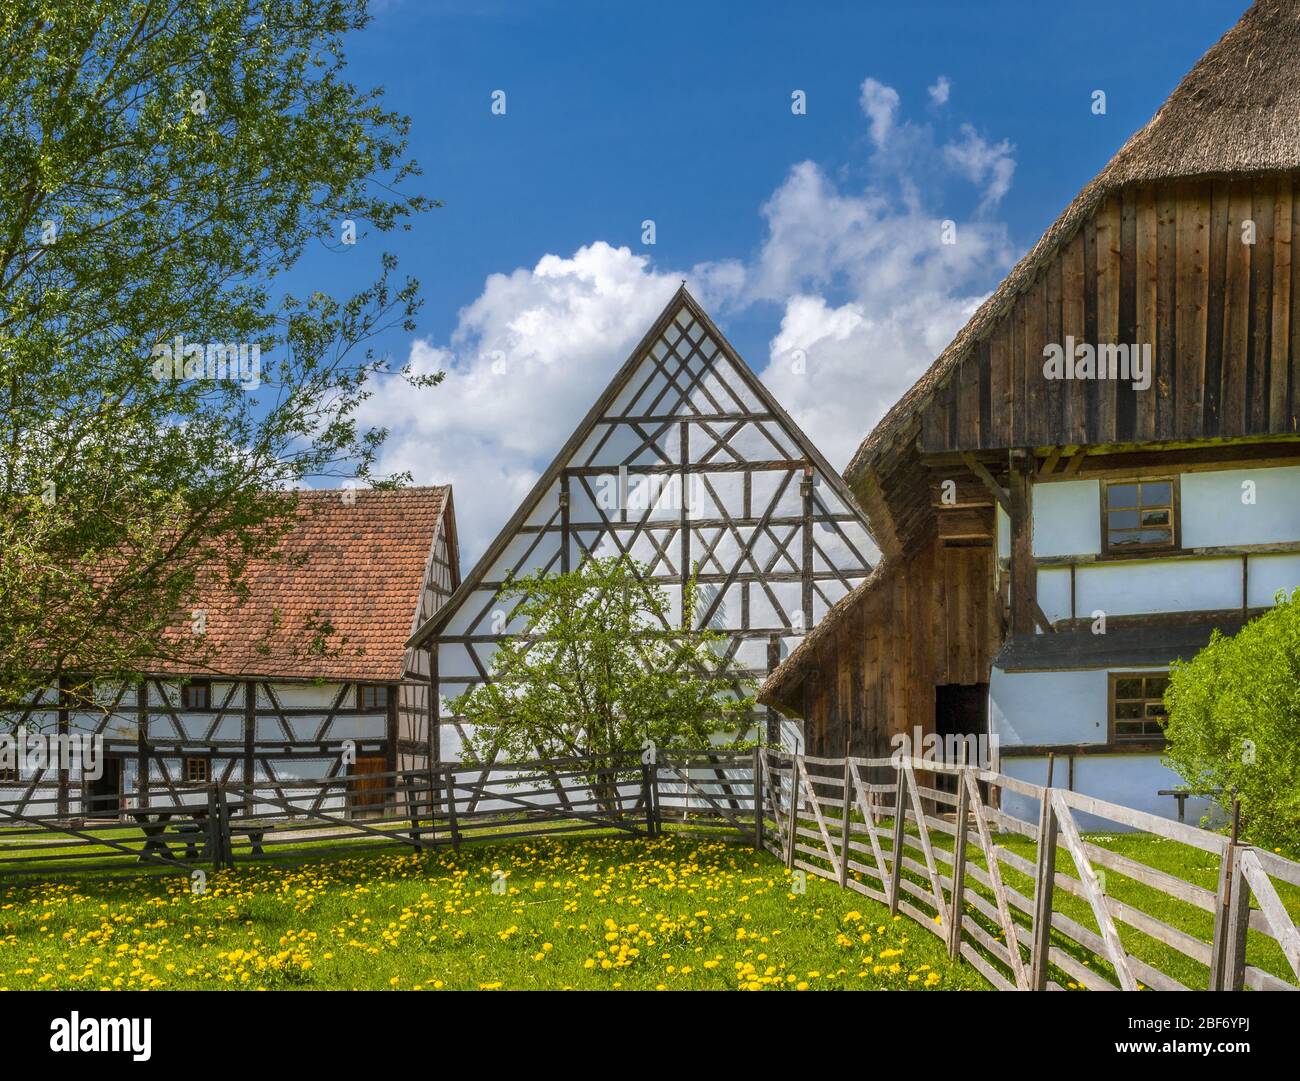 Swabian Farm Museum, Illerbeuren, Germany, Bavaria, Swabia, Allgaeu Stock Photo